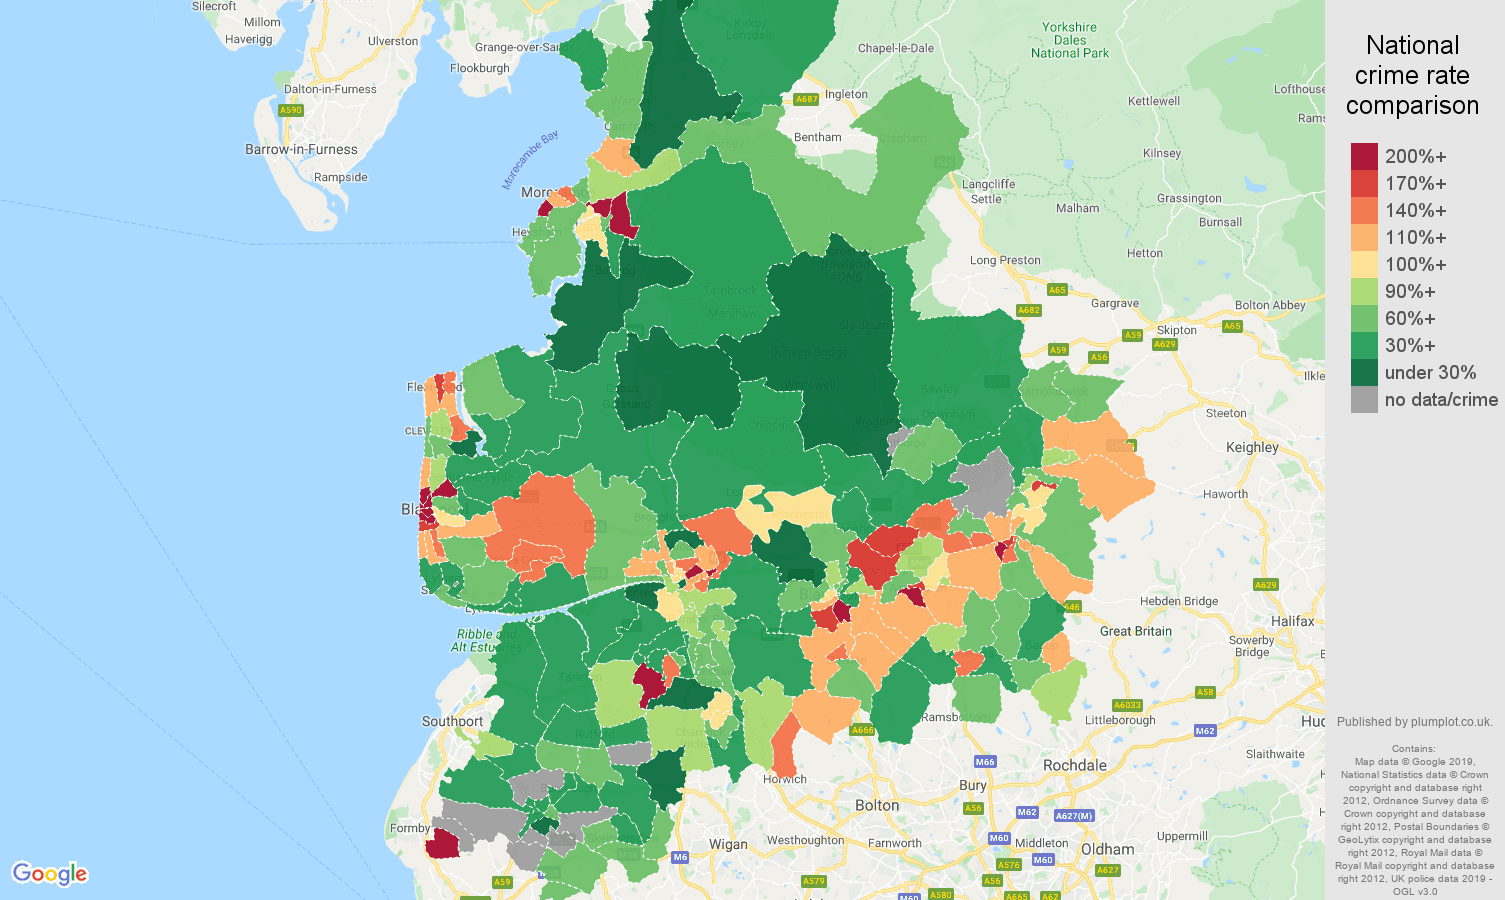 Lancashire other crime rate comparison map